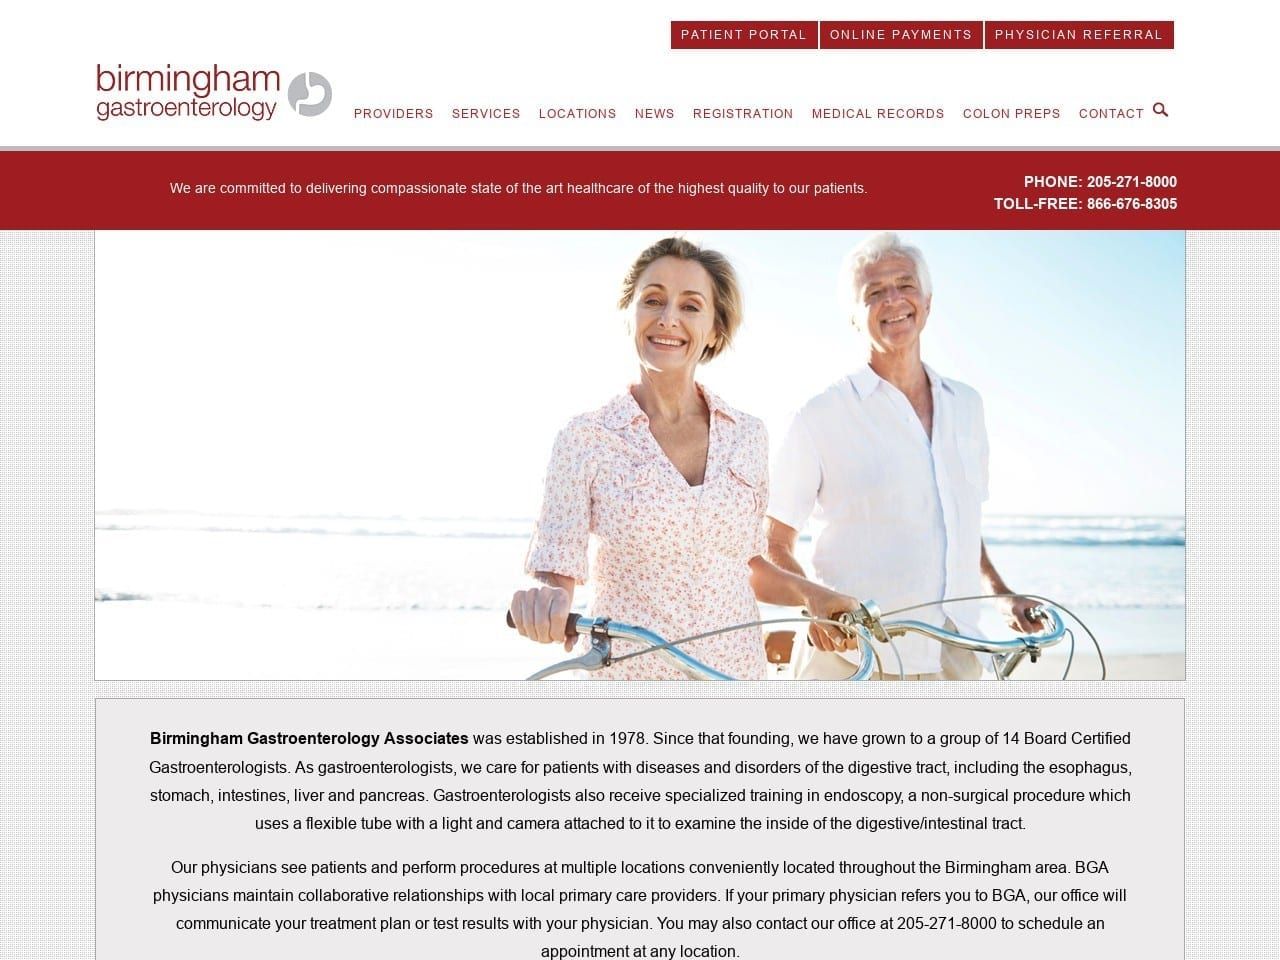 Cullman Gastroenterology Associates Website Screenshot from bgapc.com